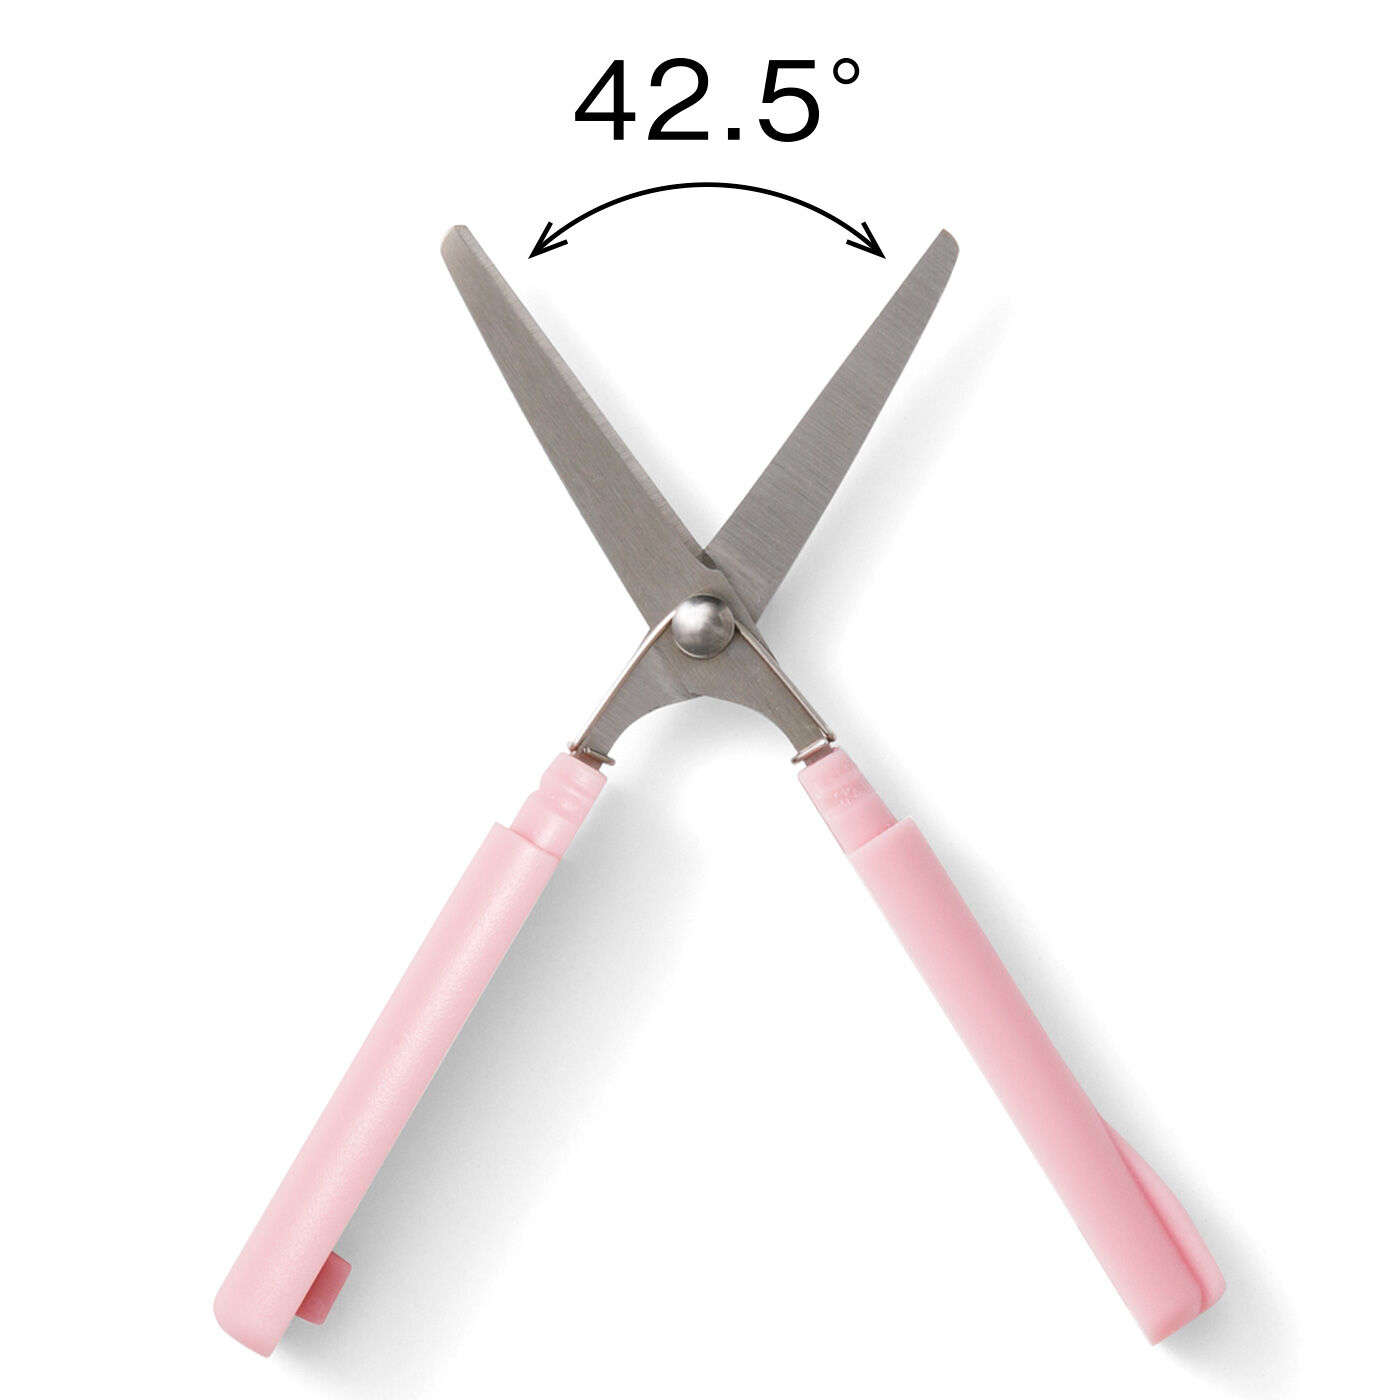 フェリシモメリー|コスメサイズがうれしい♪ バネの力で楽に切れるはさみ|刃が開きすぎないように開閉角度を制御した安心仕様。